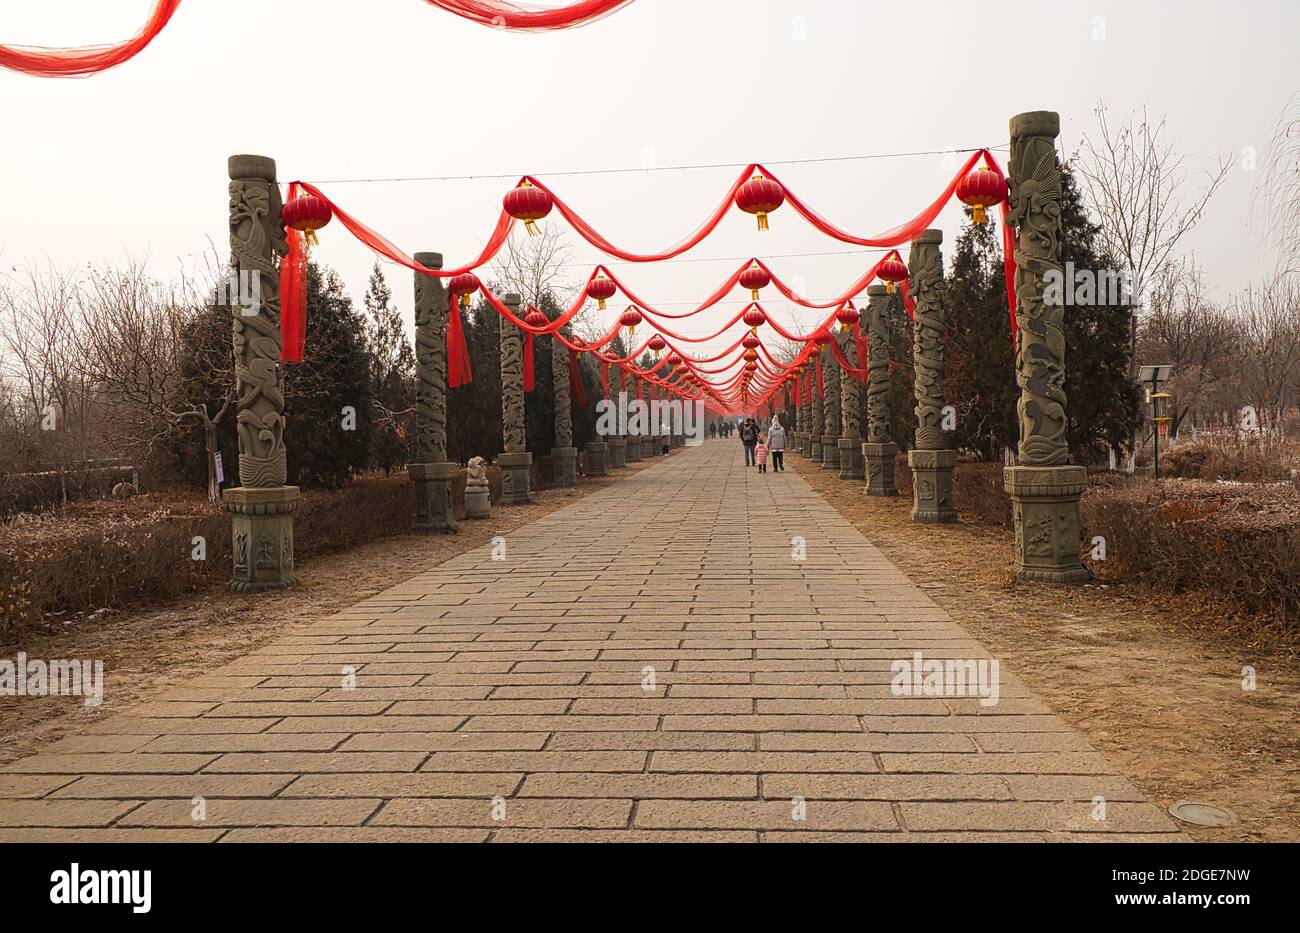 rubans de bienvenue chinois pour un événement sportif Banque D'Images